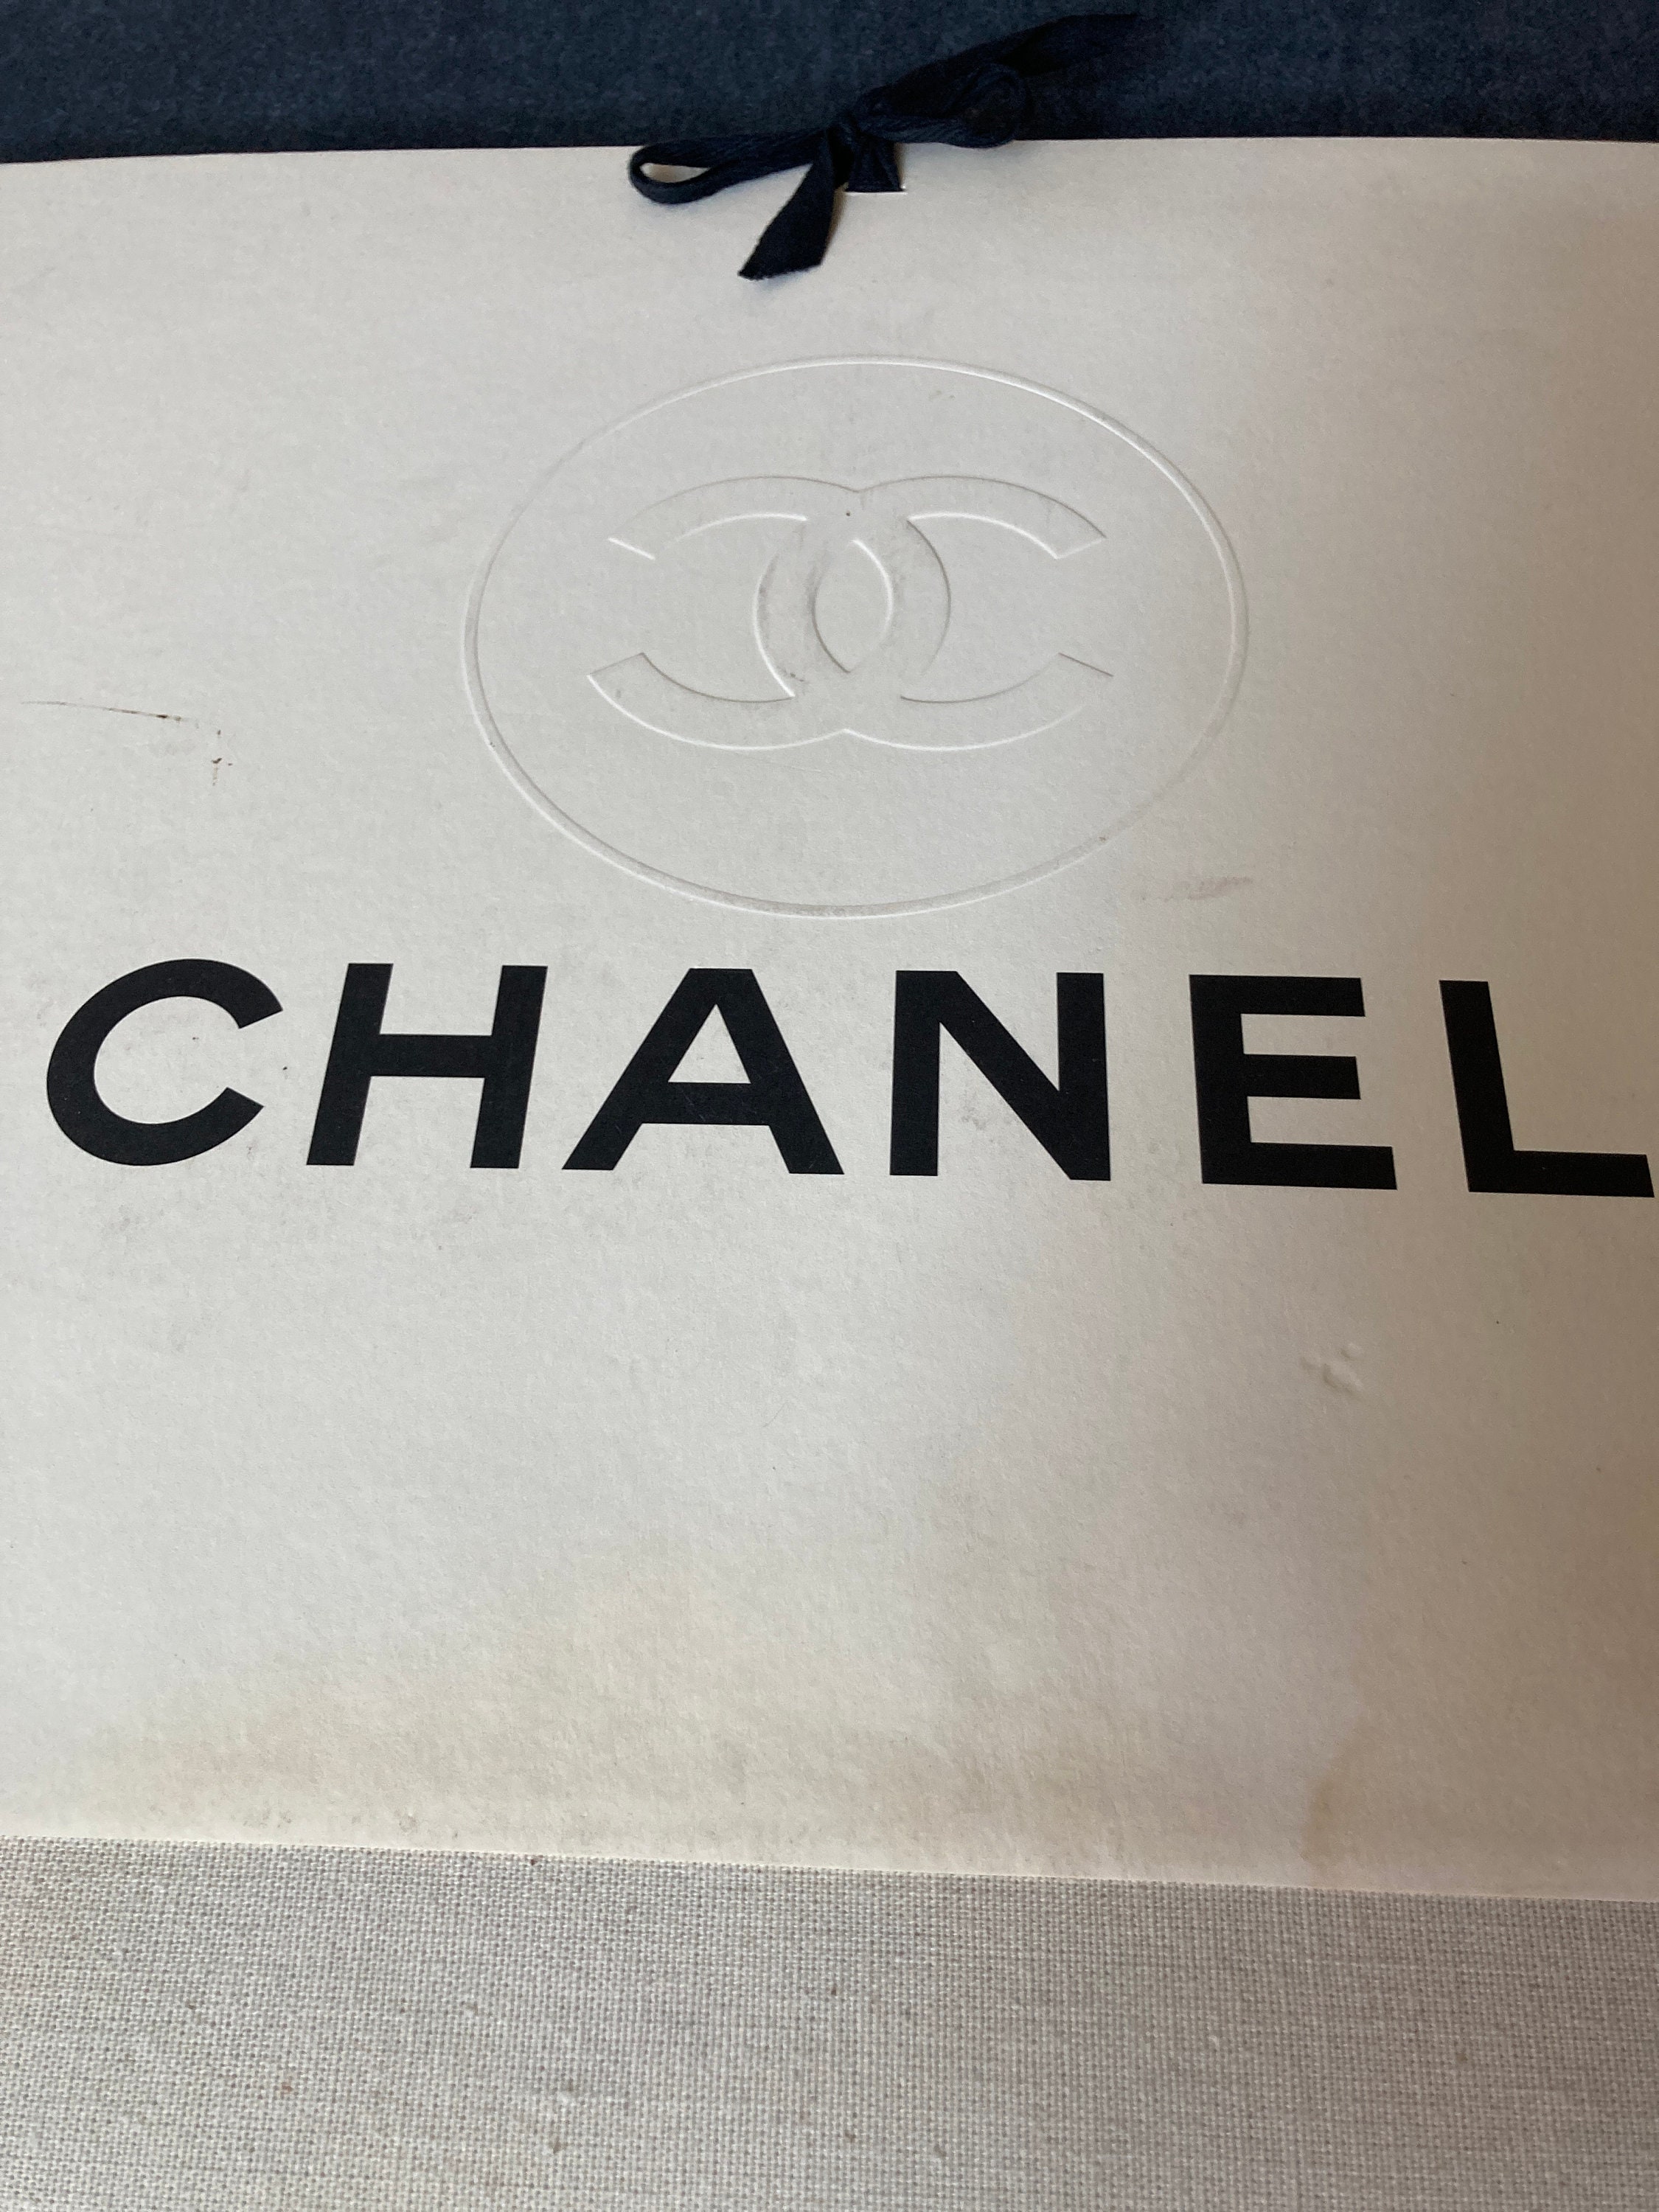 Chanel Displays - 450 For Sale on 1stDibs  display chanel, chanel cabinet,  chanel window display